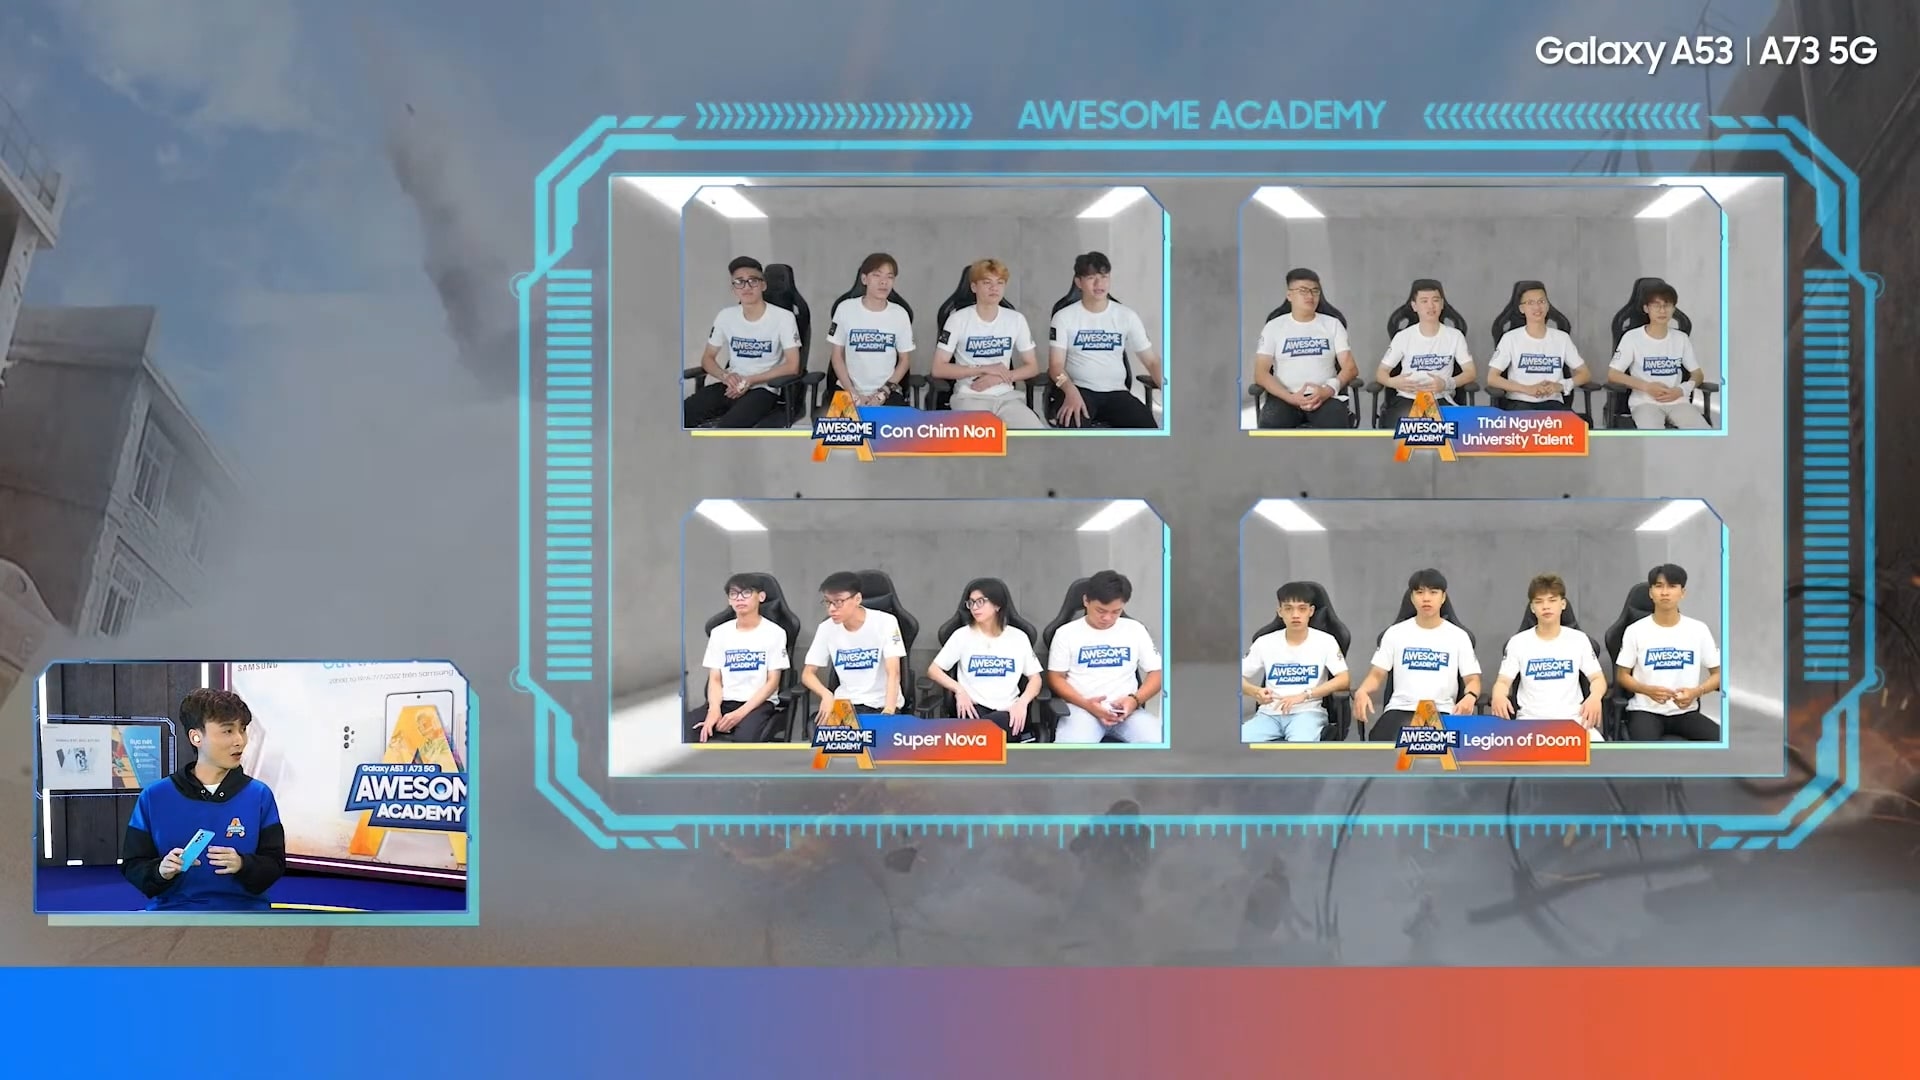 Trực tiếp Awesome Academy tập 2 của Samsung Galaxy A - "Ó sầm" gọi tên Bộ Bim tập 2 cùng các kiến thức bổ ích